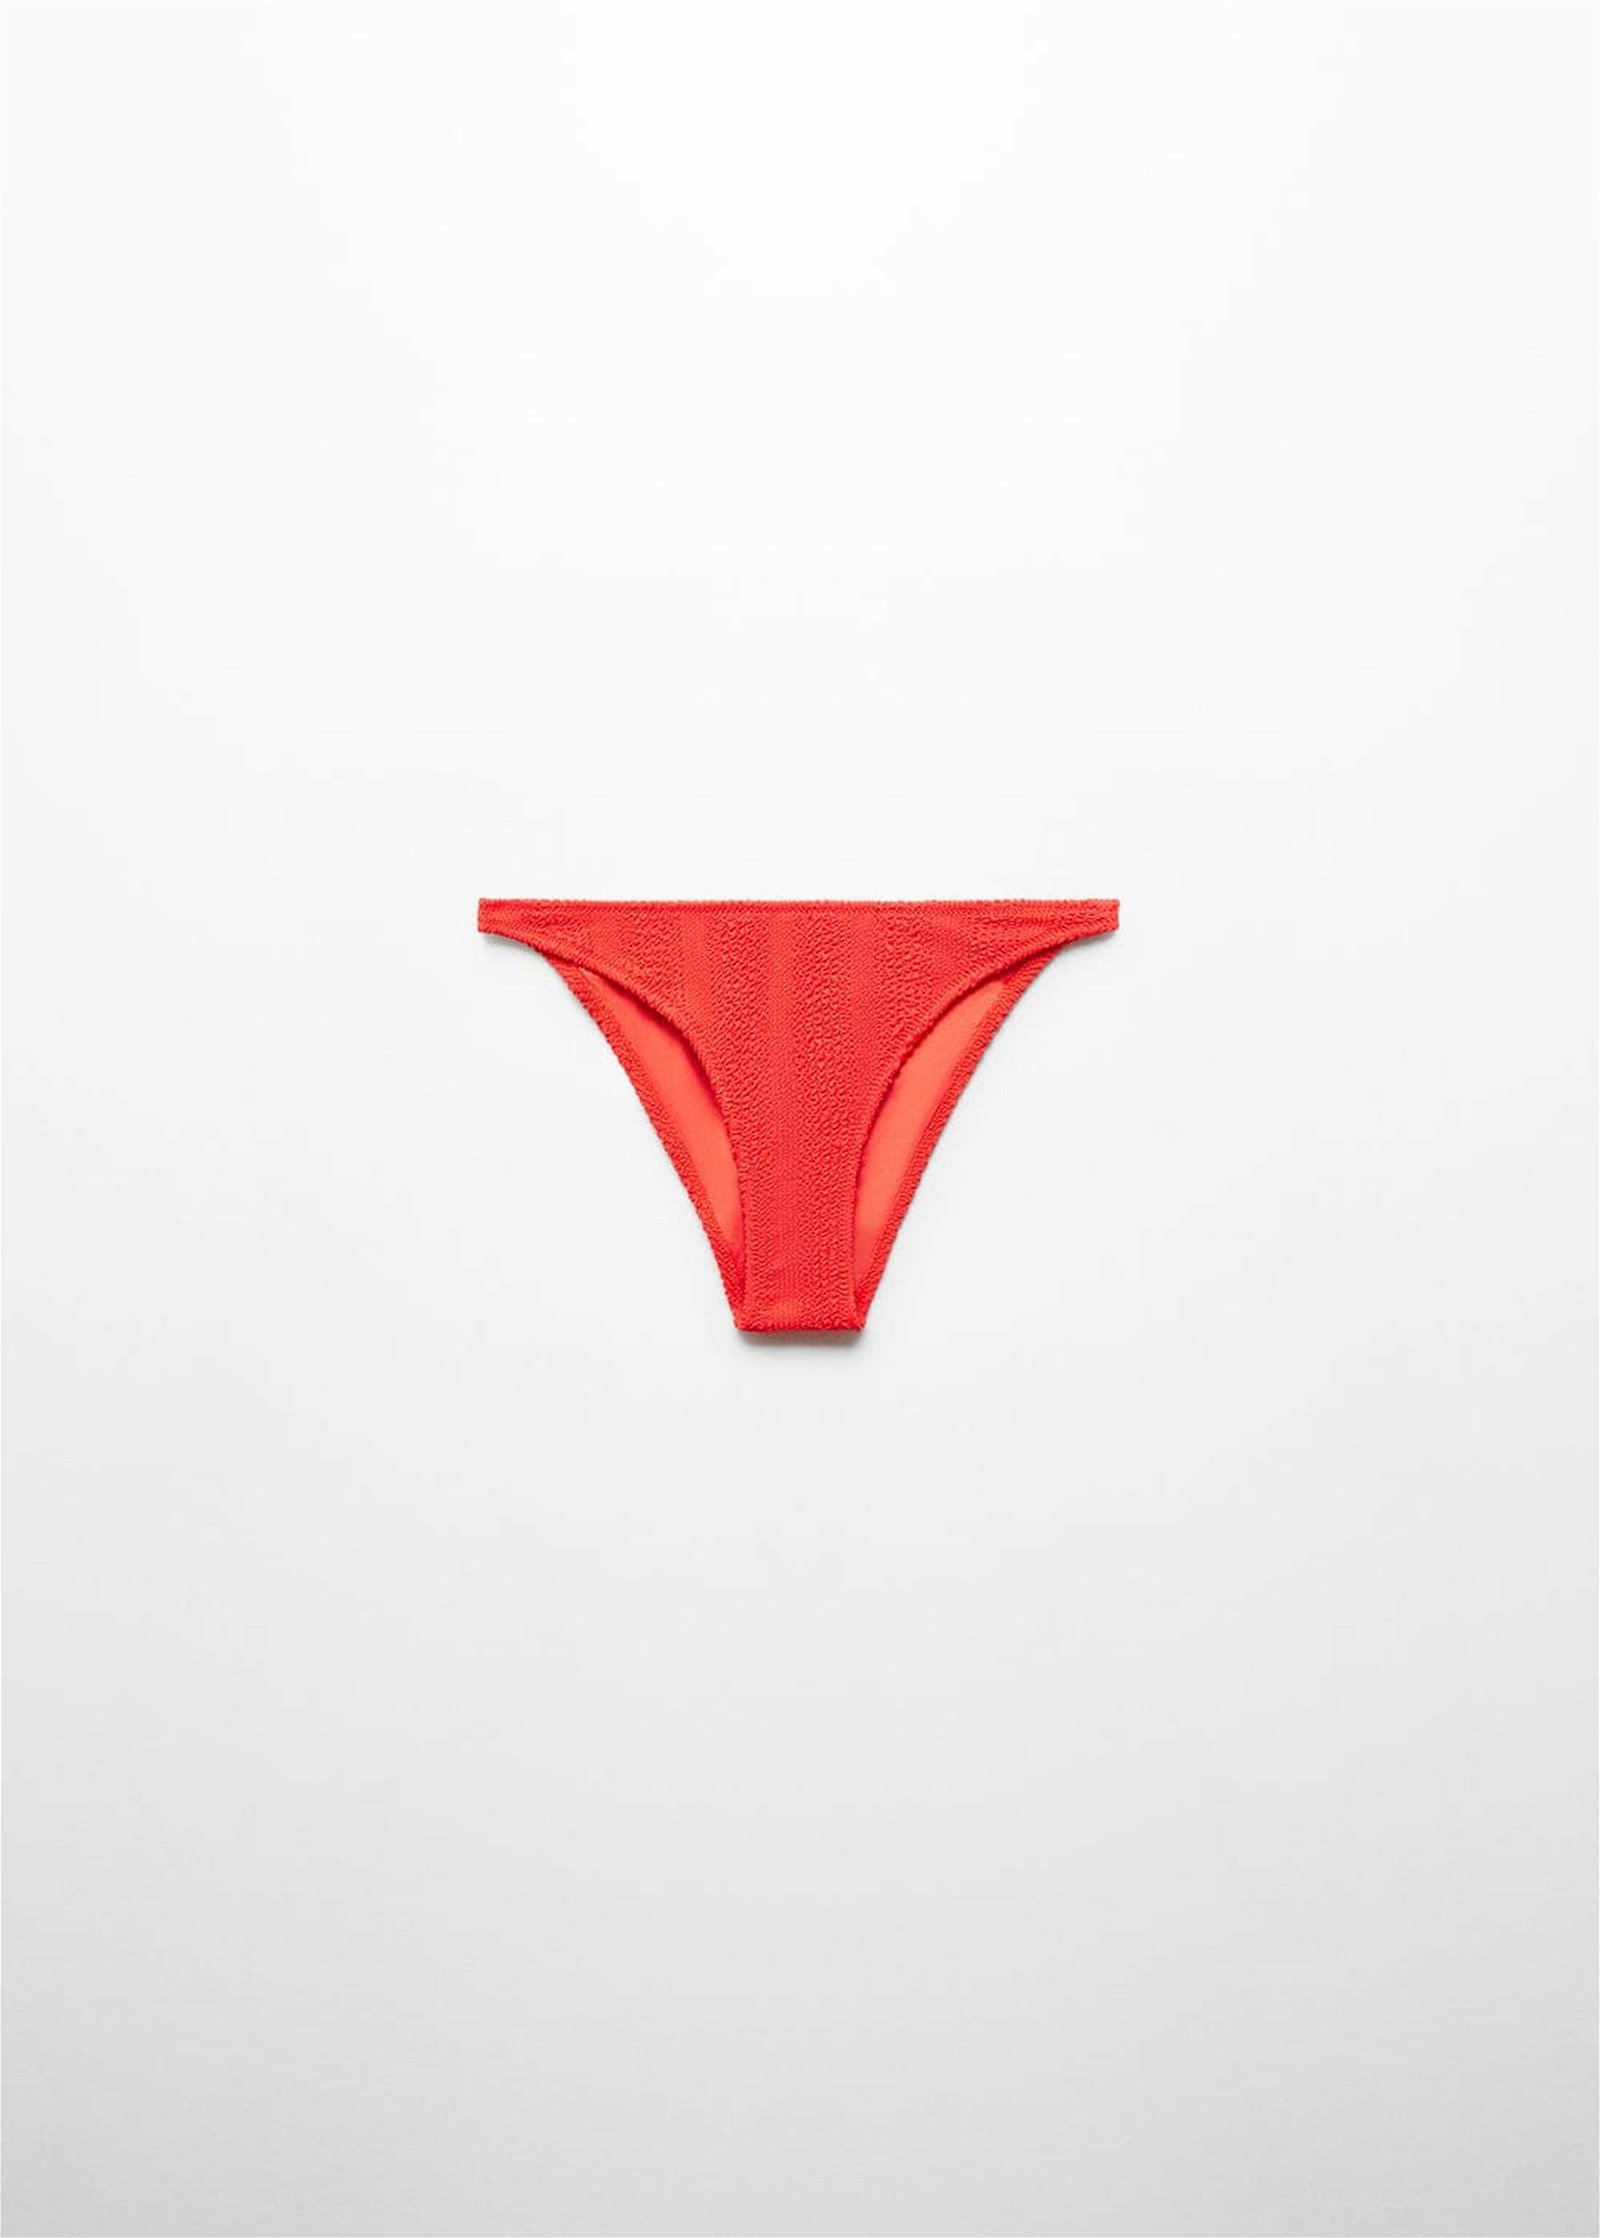 Mango Kadın Dokulu Klasik Bikini Altı Mercan Kırmızısı